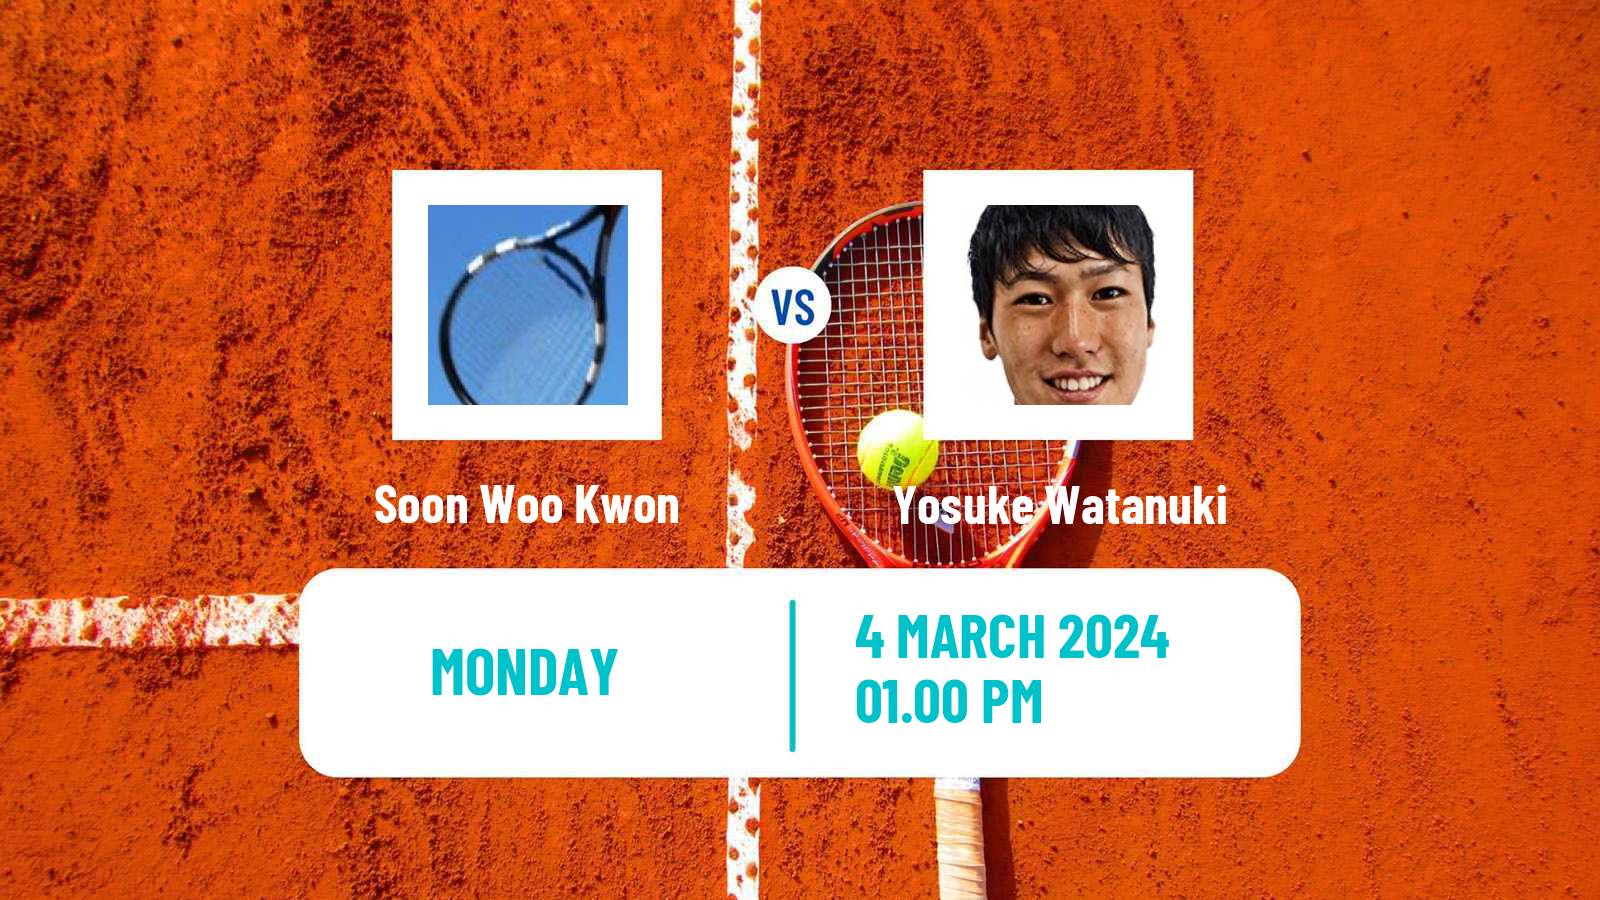 Tennis ATP Indian Wells Soon Woo Kwon - Yosuke Watanuki